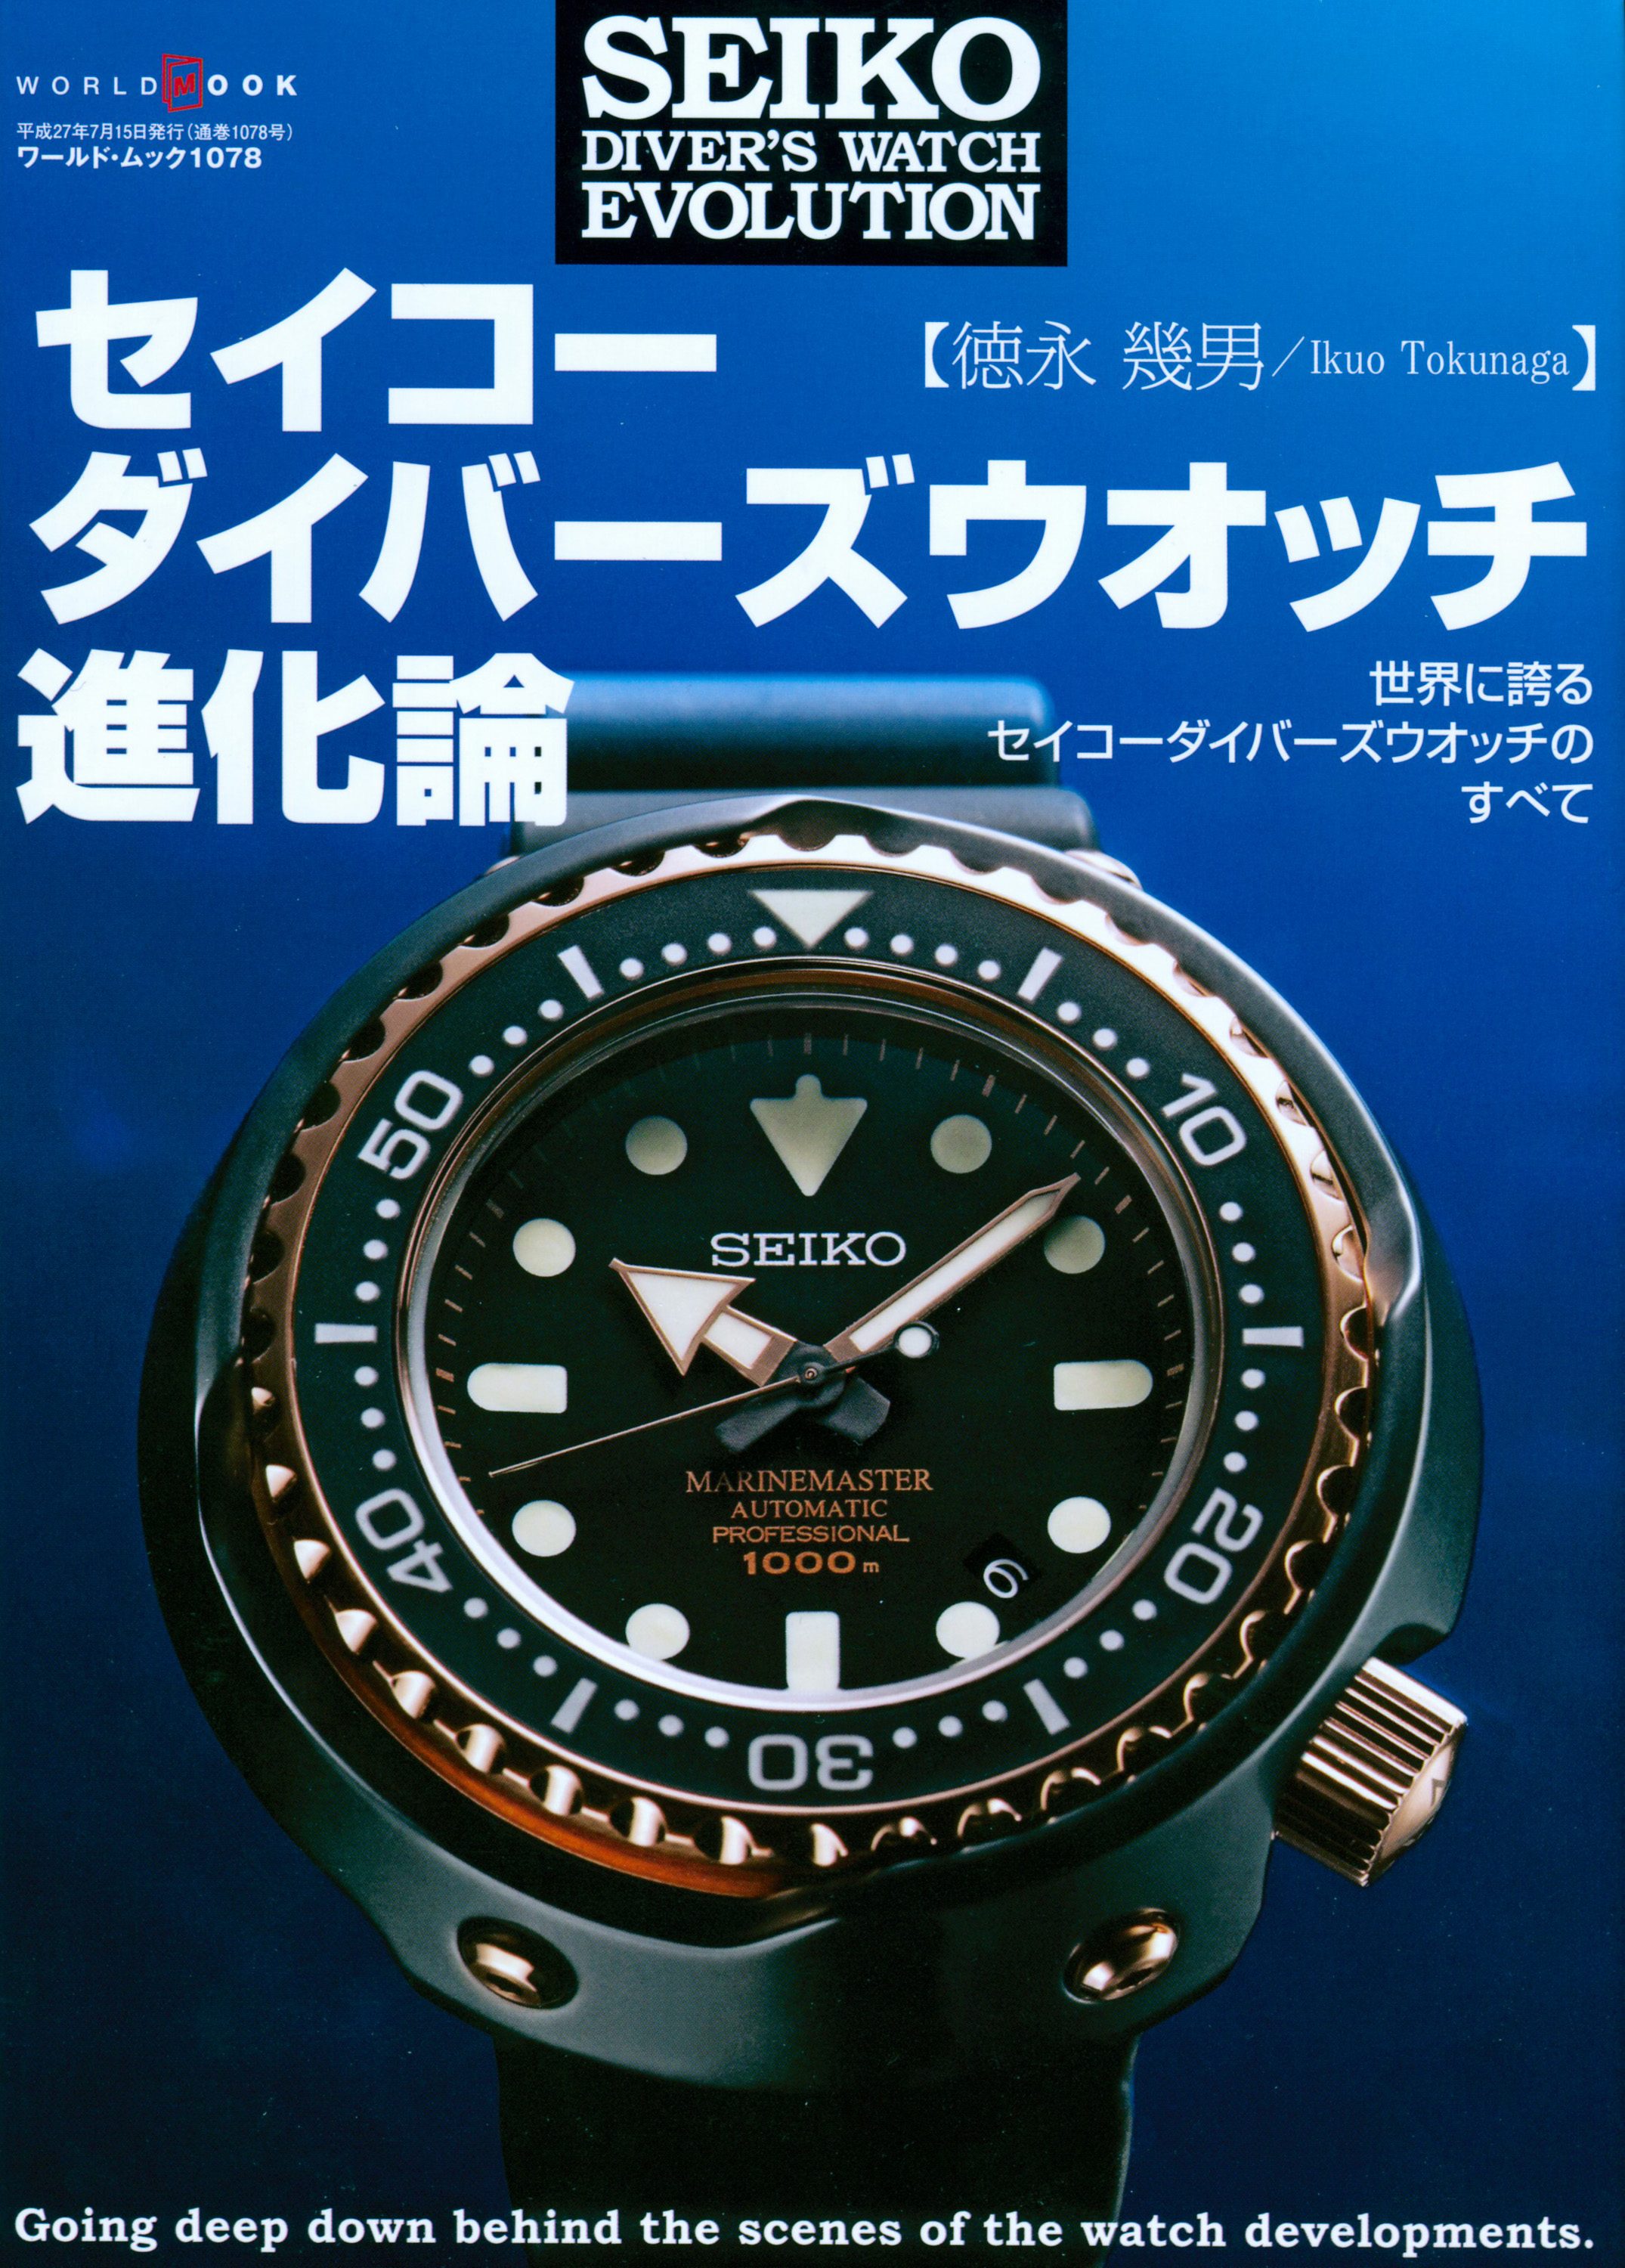 The Seiko book : 時の革新者・セイコー腕時計の軌跡